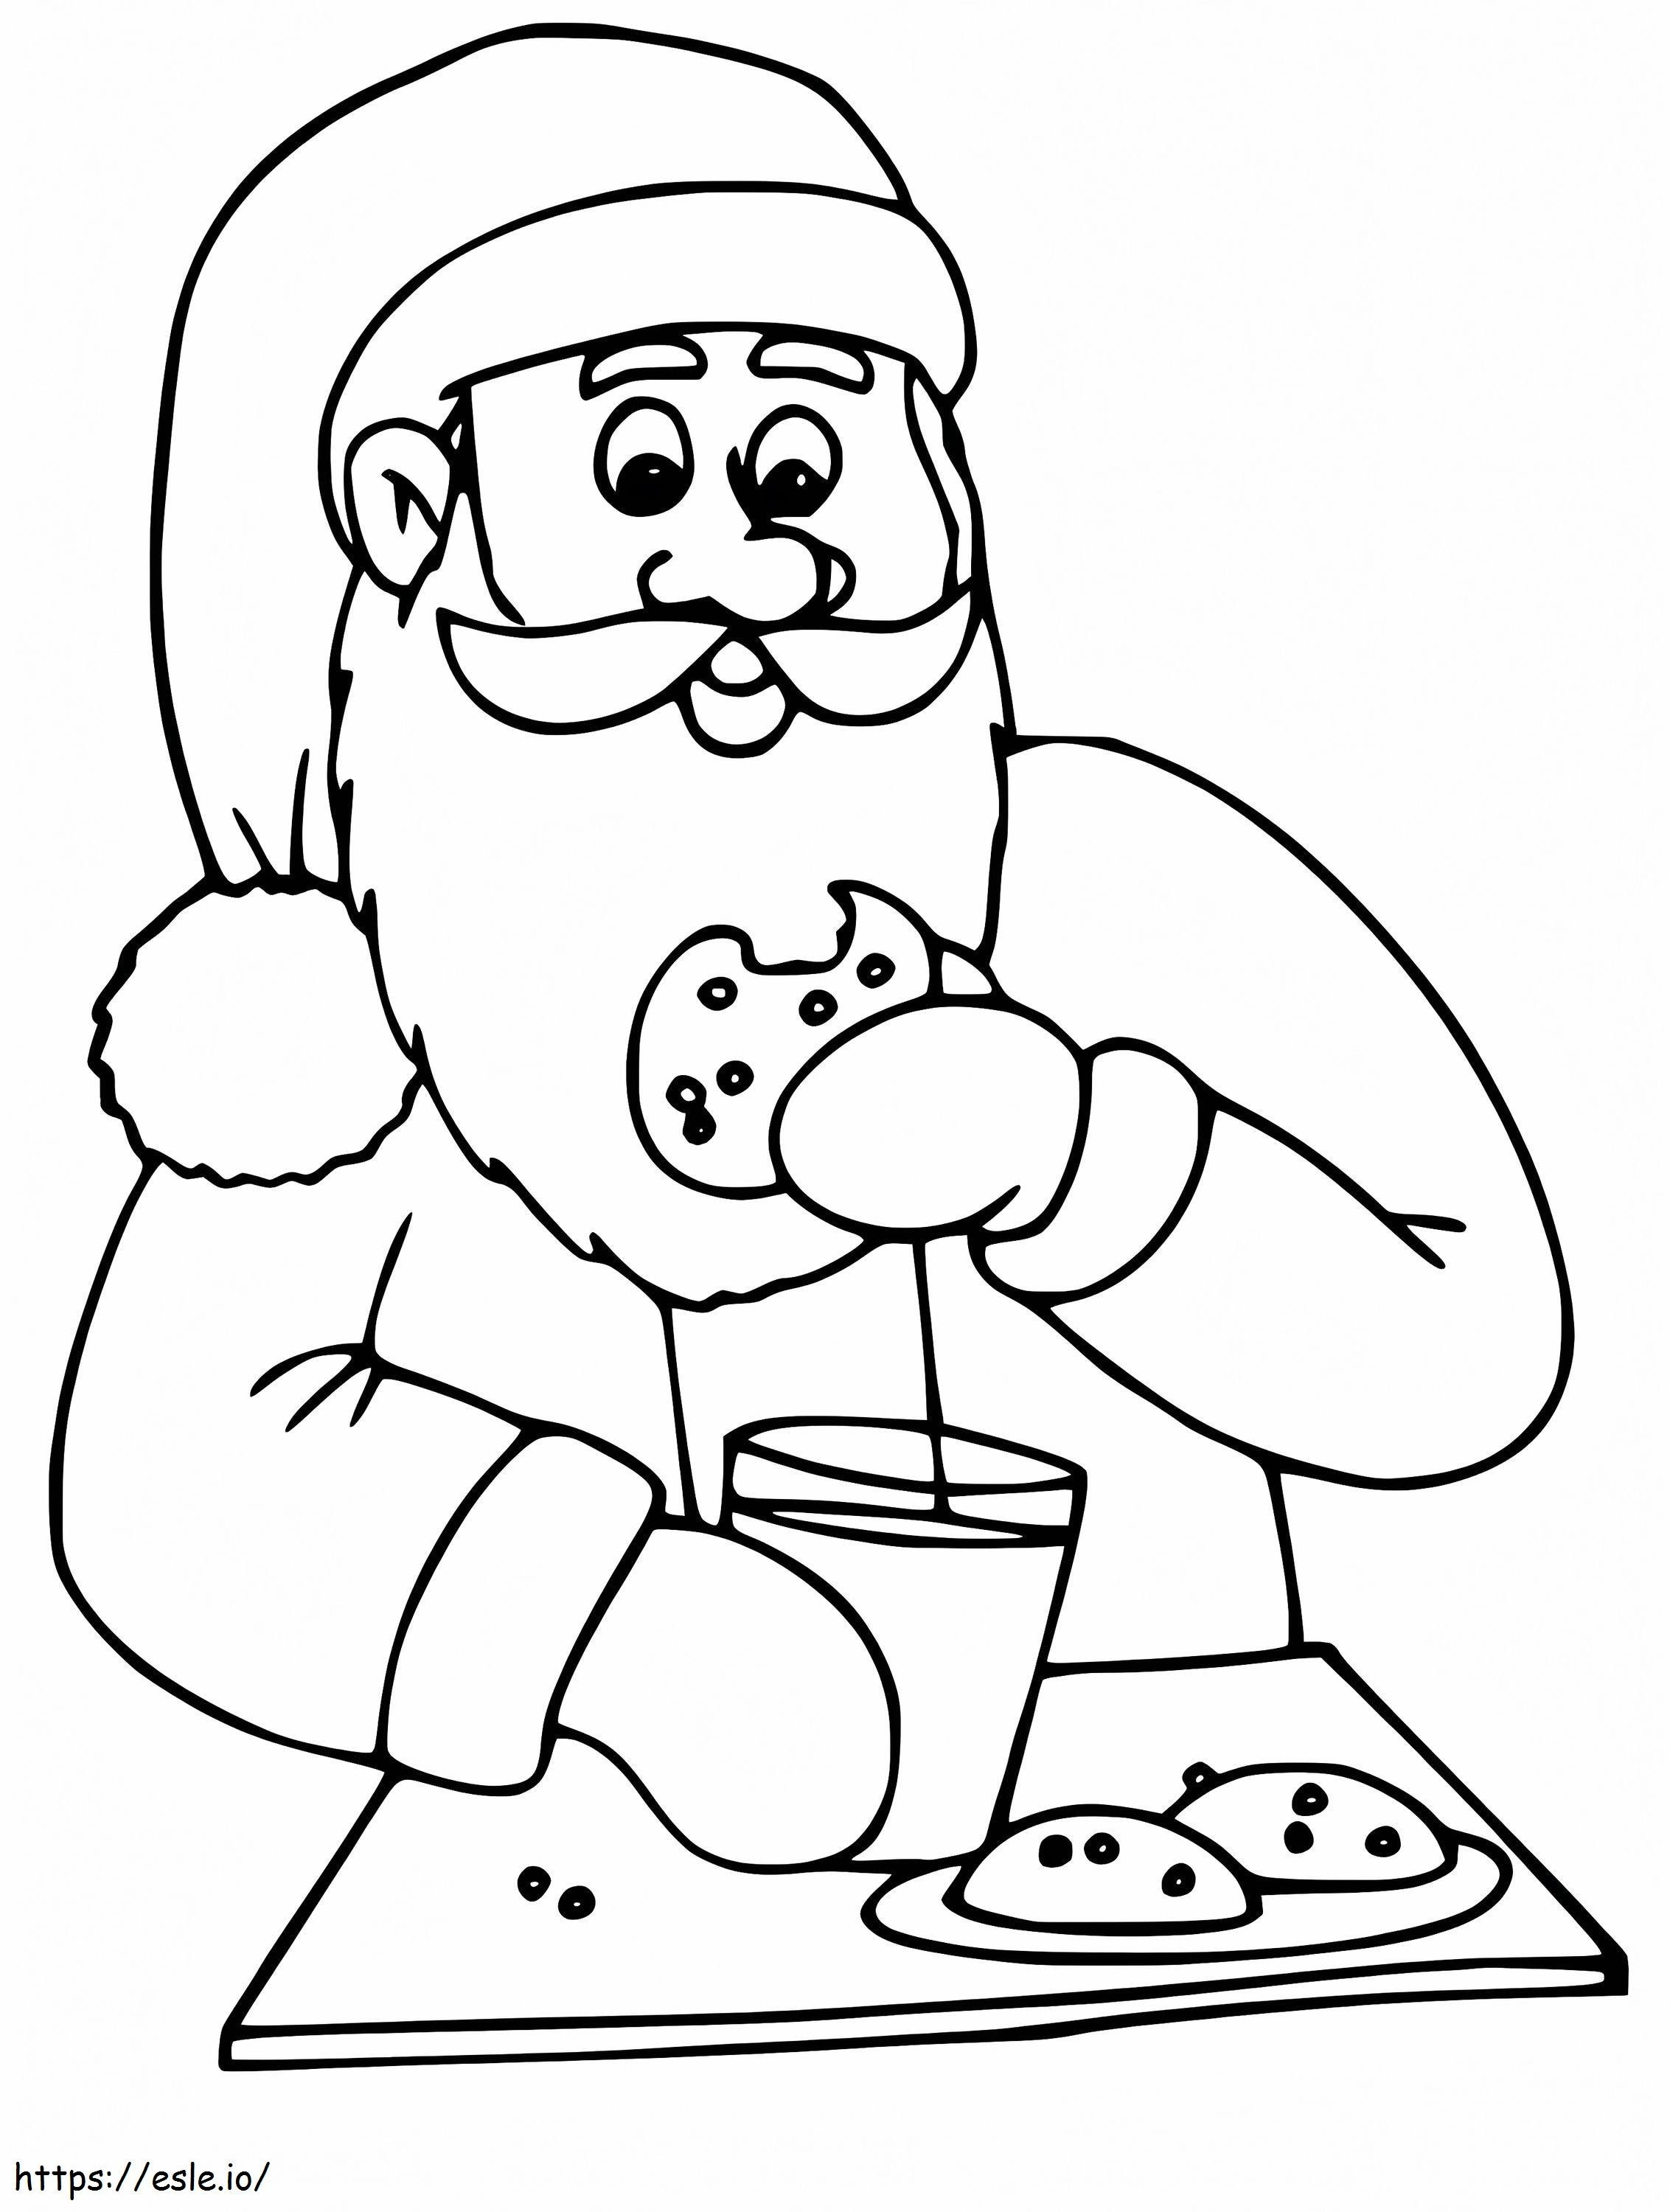 Papai Noel Comendo Biscoitos para colorir